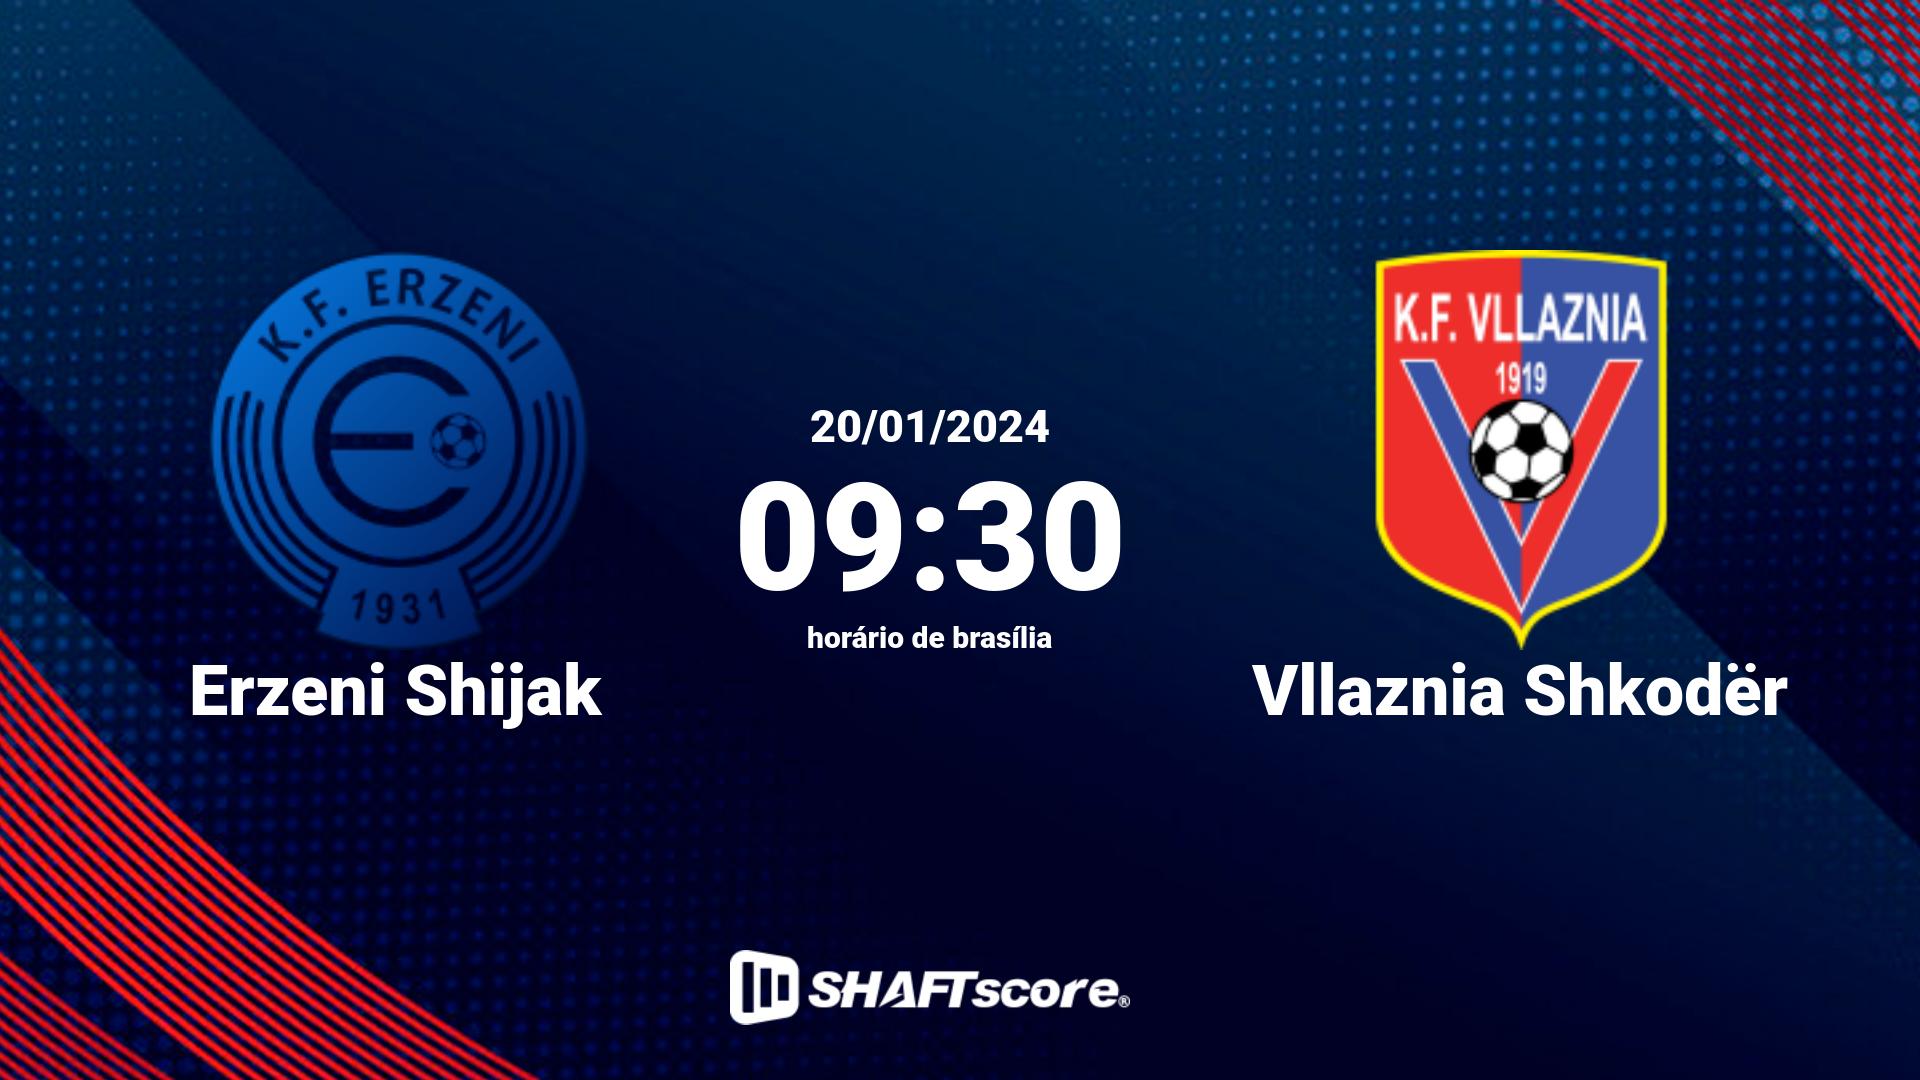 Estatísticas do jogo Erzeni Shijak vs Vllaznia Shkodër 20.01 09:30